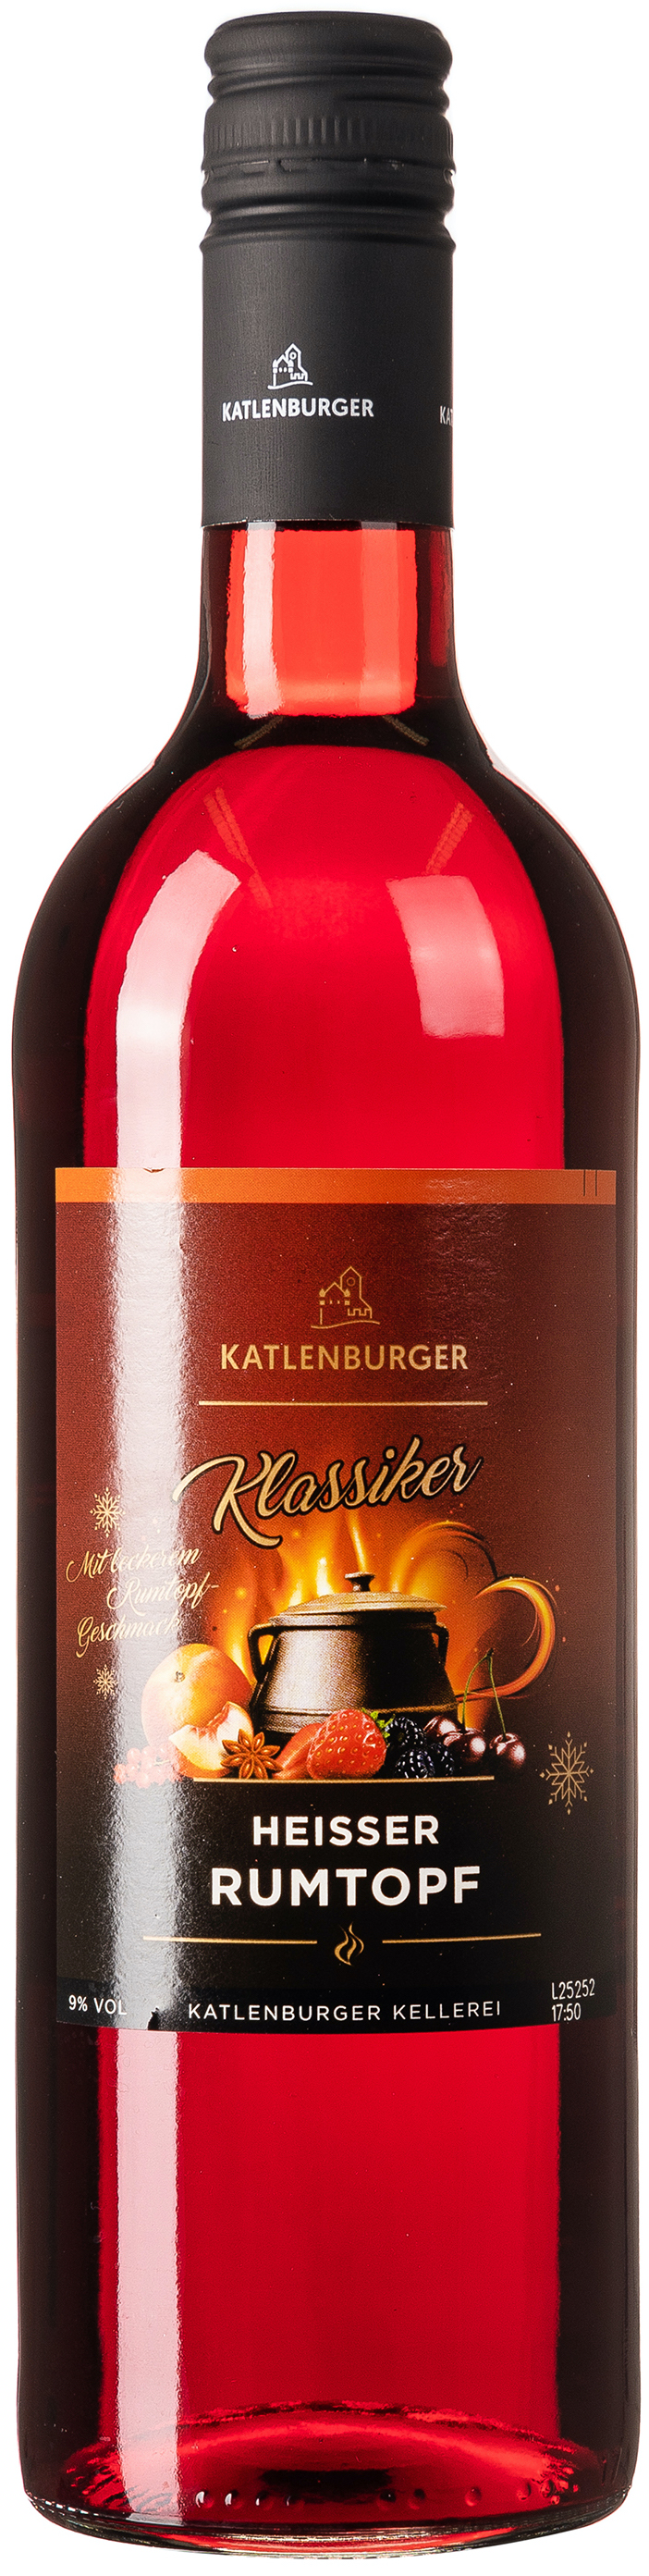 Katlenburger Heisser Rumtopf 9% vol. 0,75L